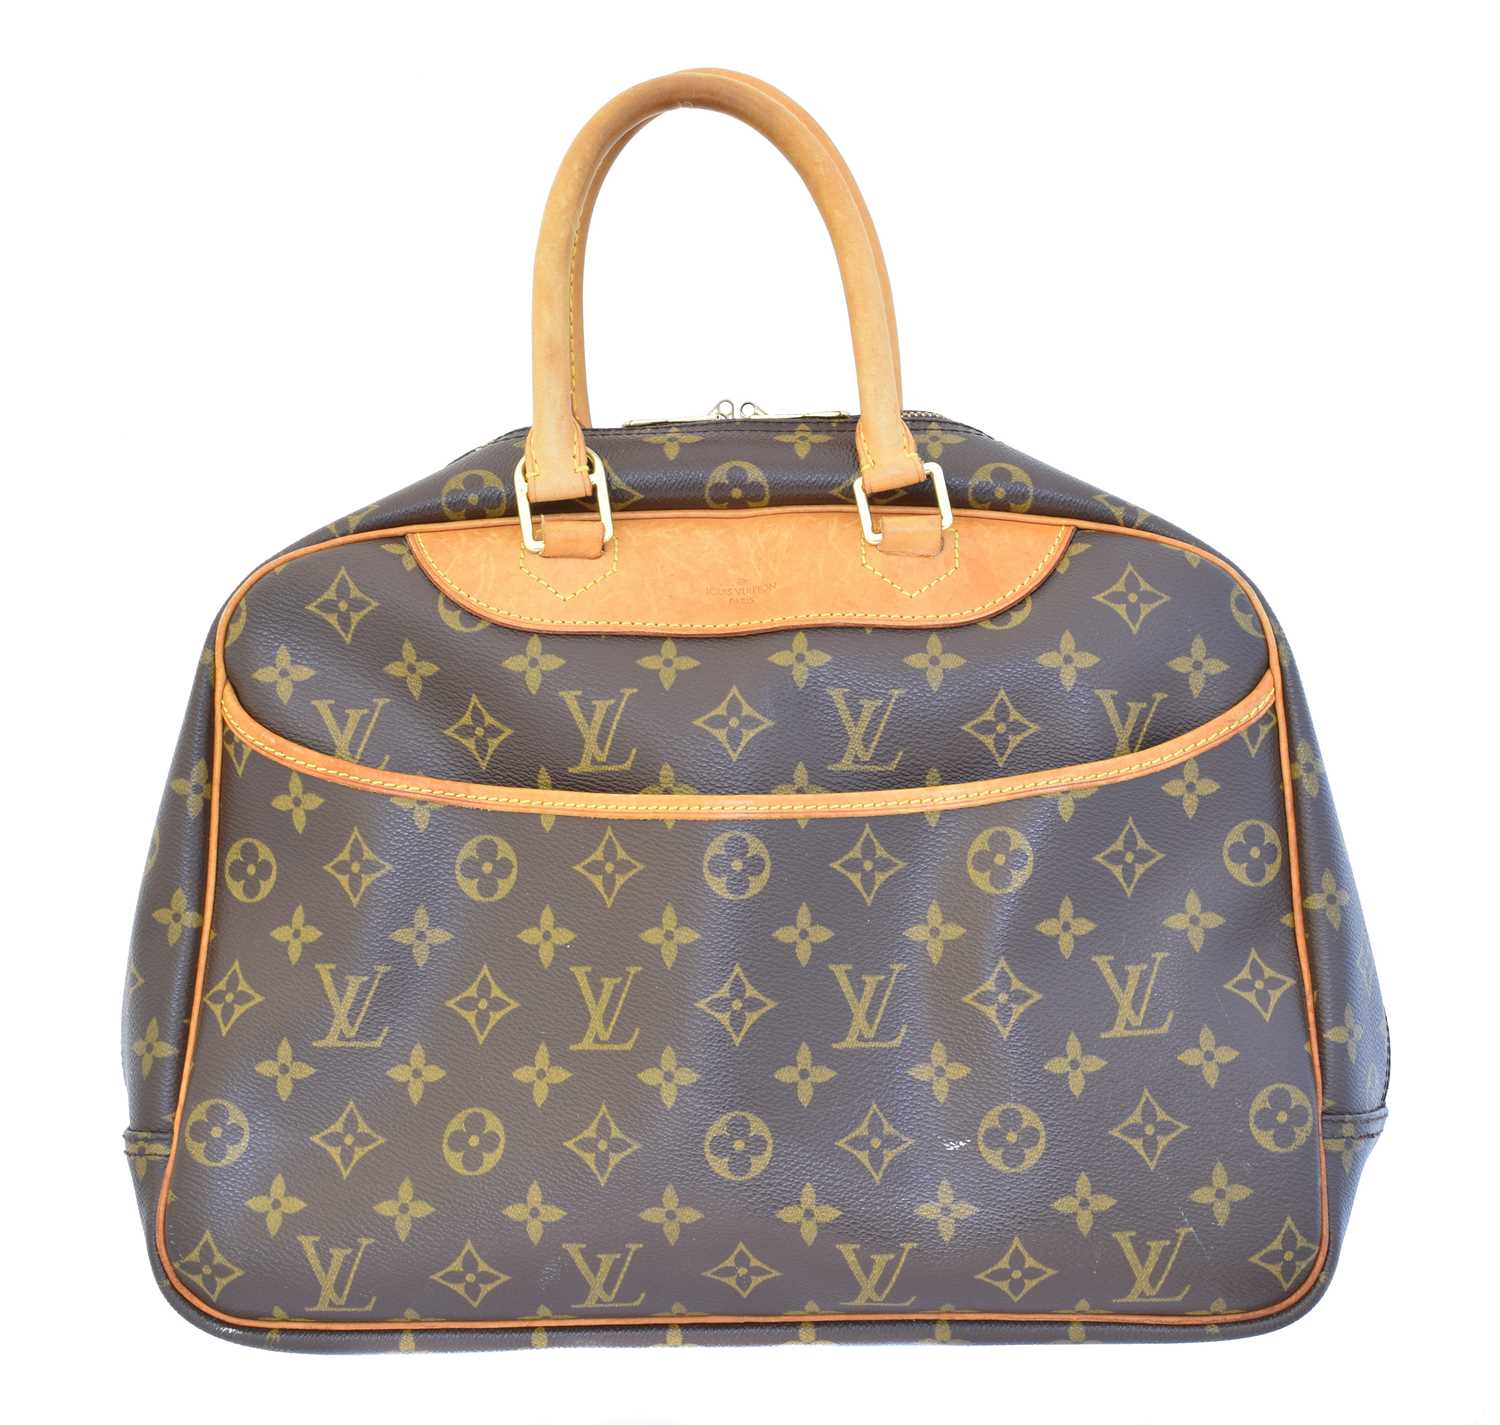 Lot 110 - A Louis Vuitton Deauville bag,